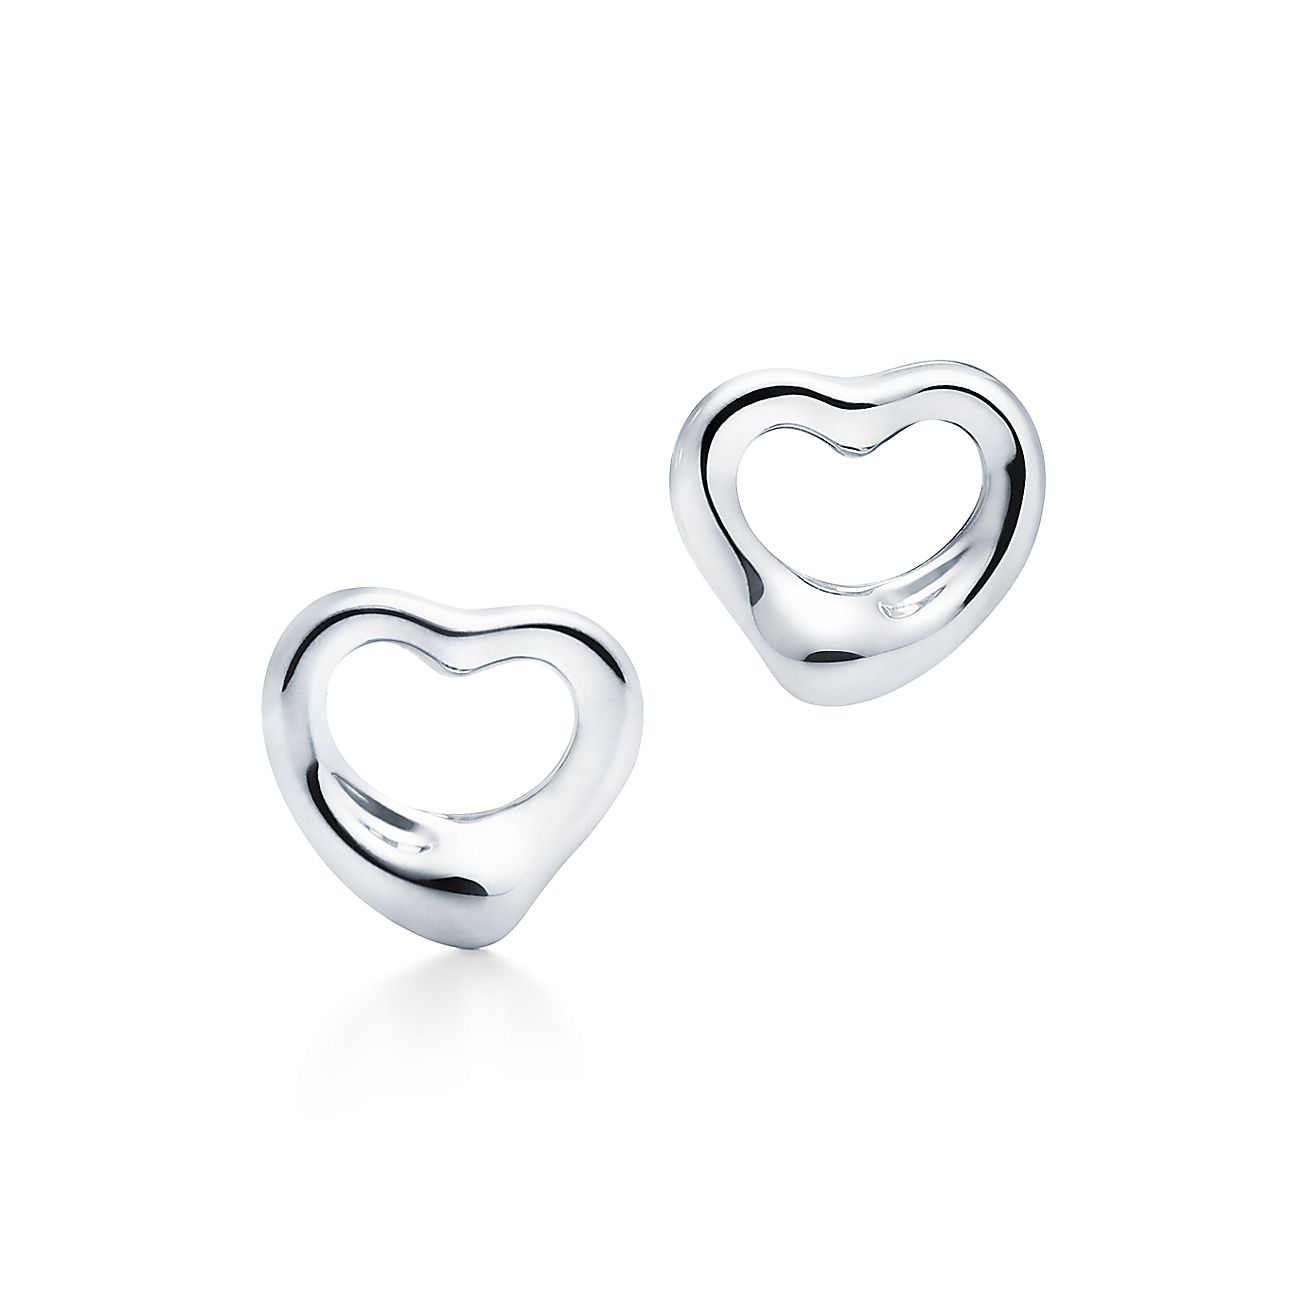 Elsa Peretti®Open Heart Stud Earrings
in Silver, 11 mm